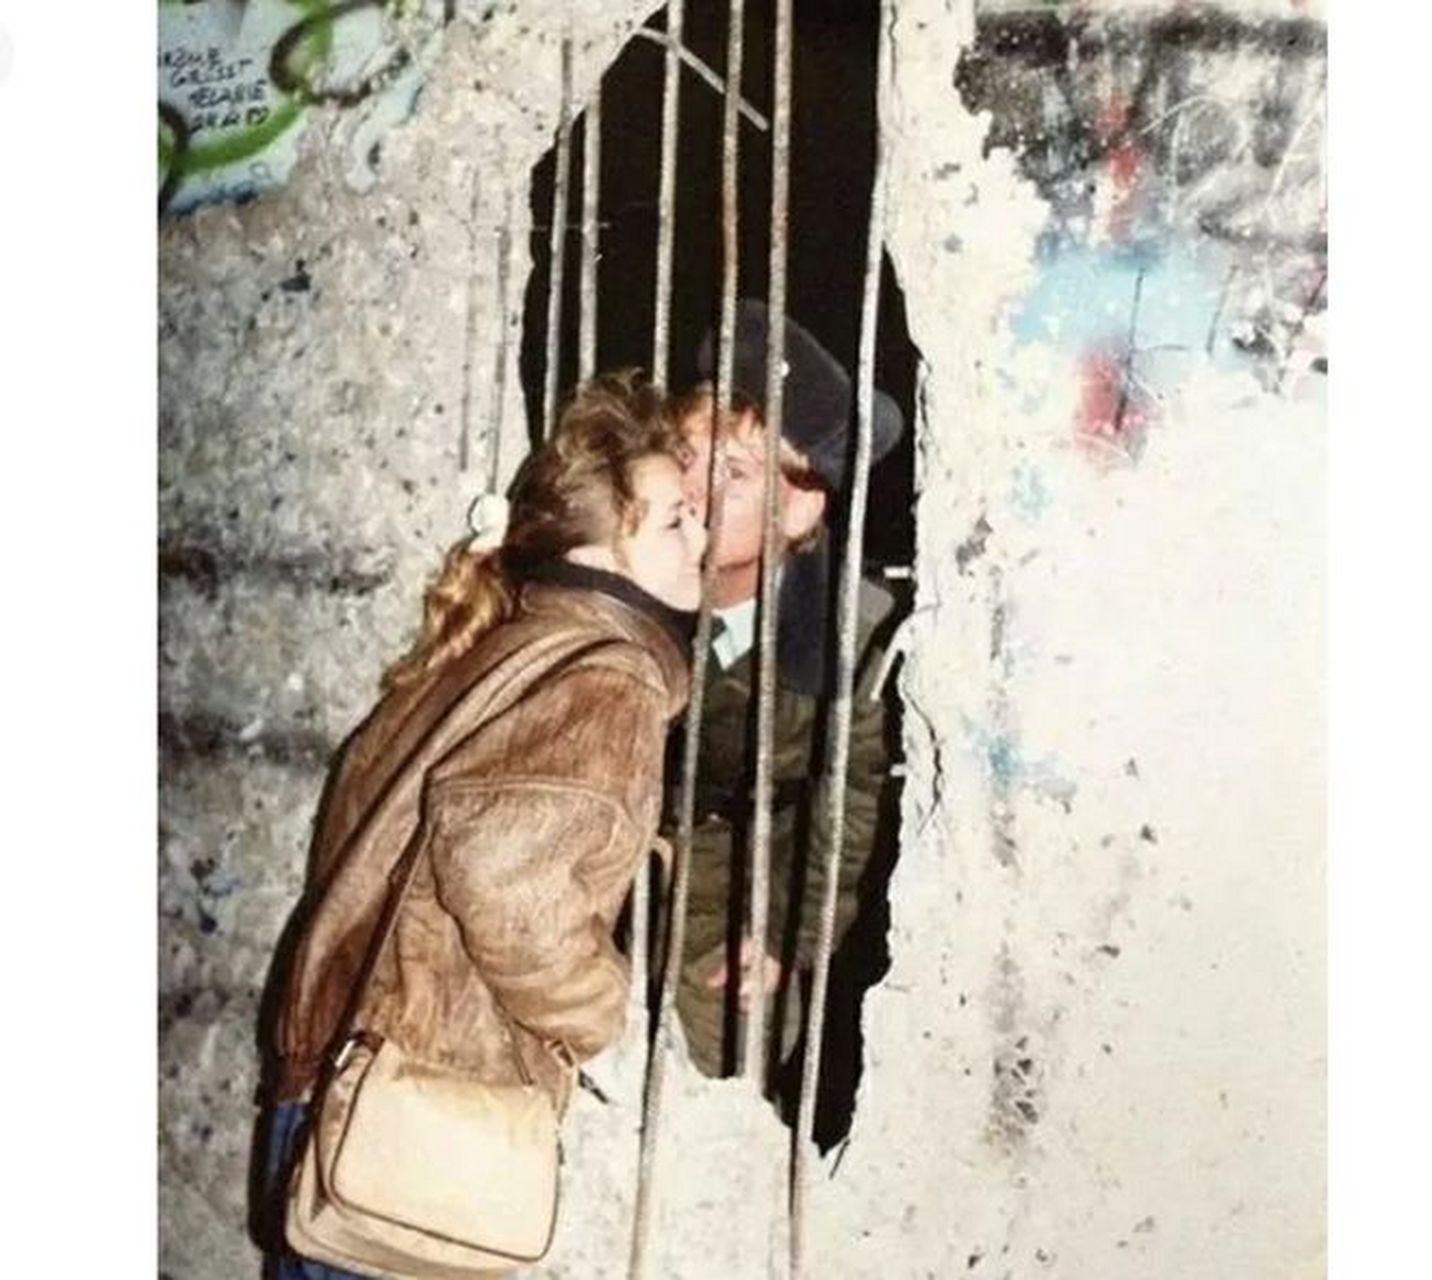 这张照片来自于1989年德国柏林墙倒塌前夕,展现了一对男女在相见面前